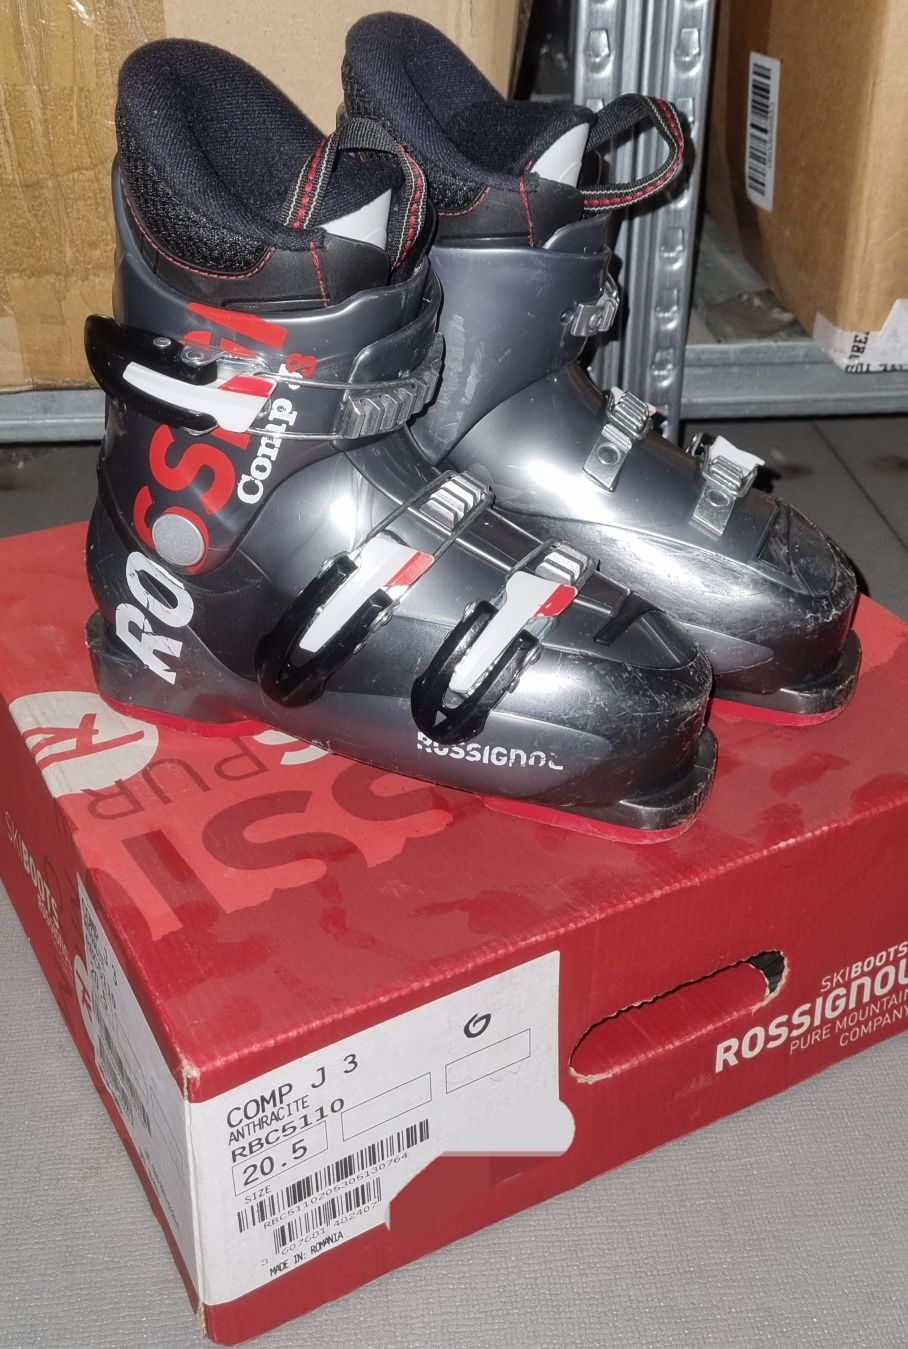 Детски ски комплект обувки Rossignol, ски с автомати Salomonи щеки